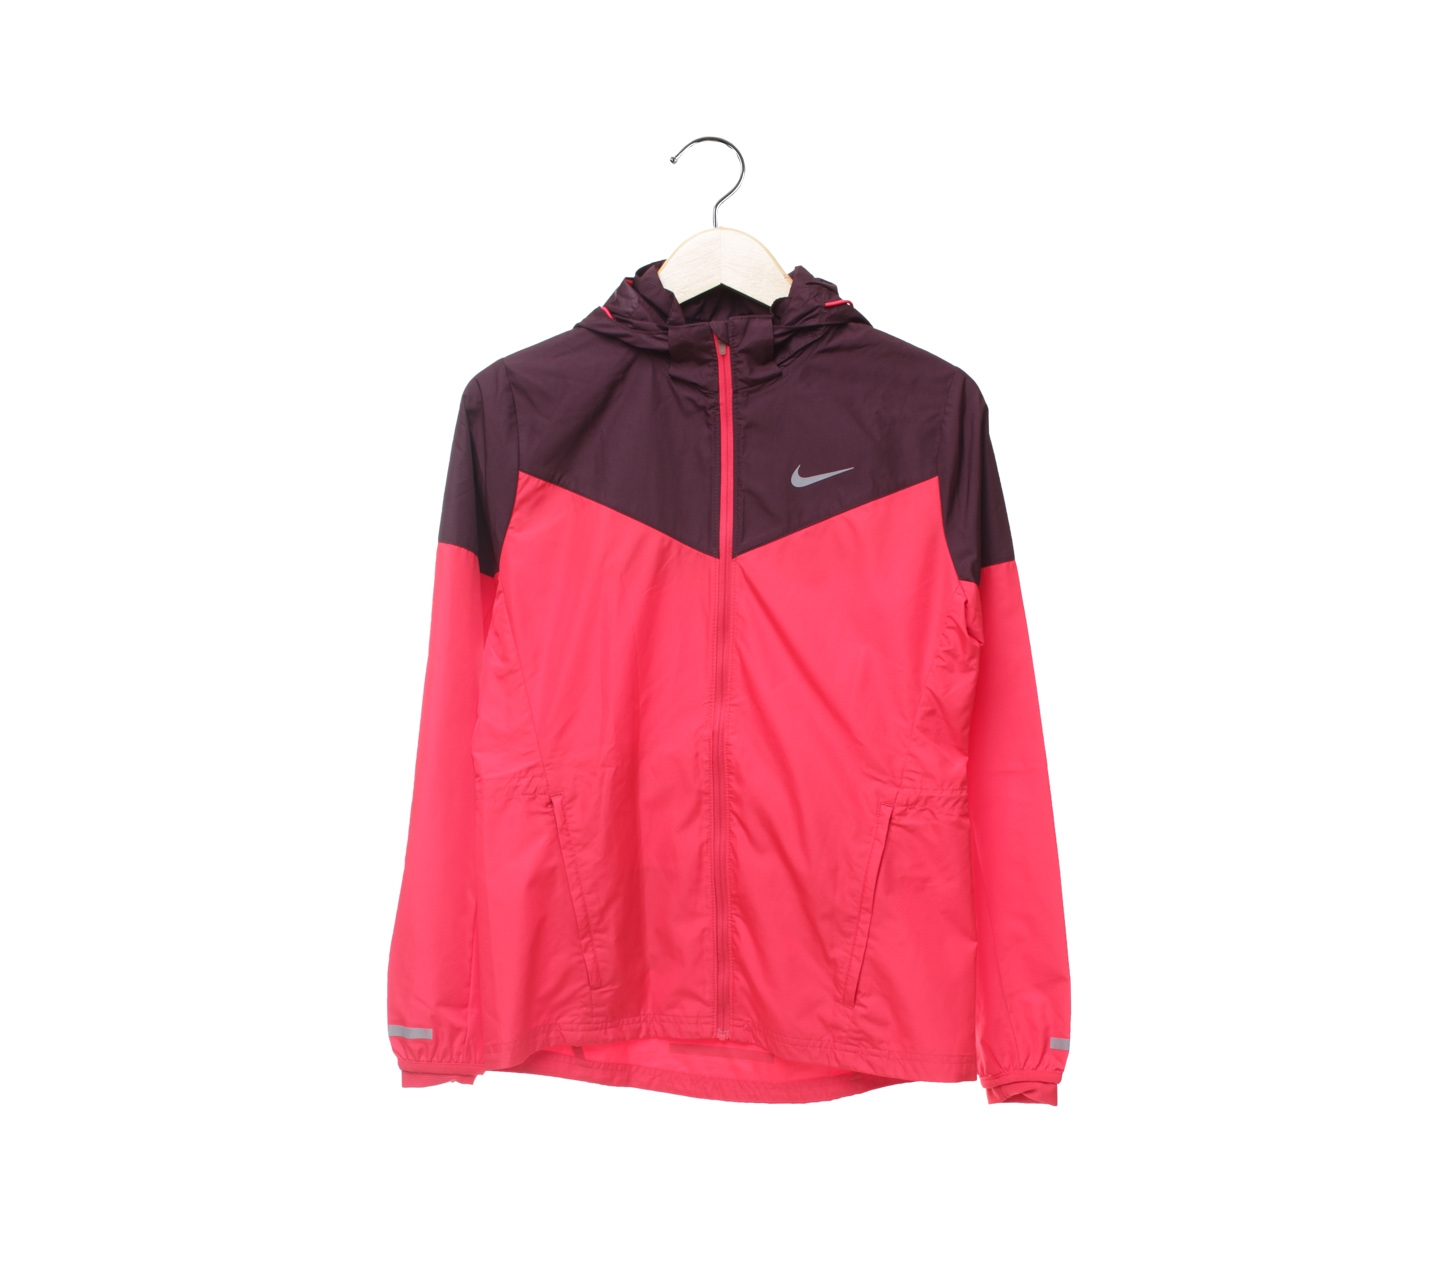 Nike Red And Dark Purple Running Jacket